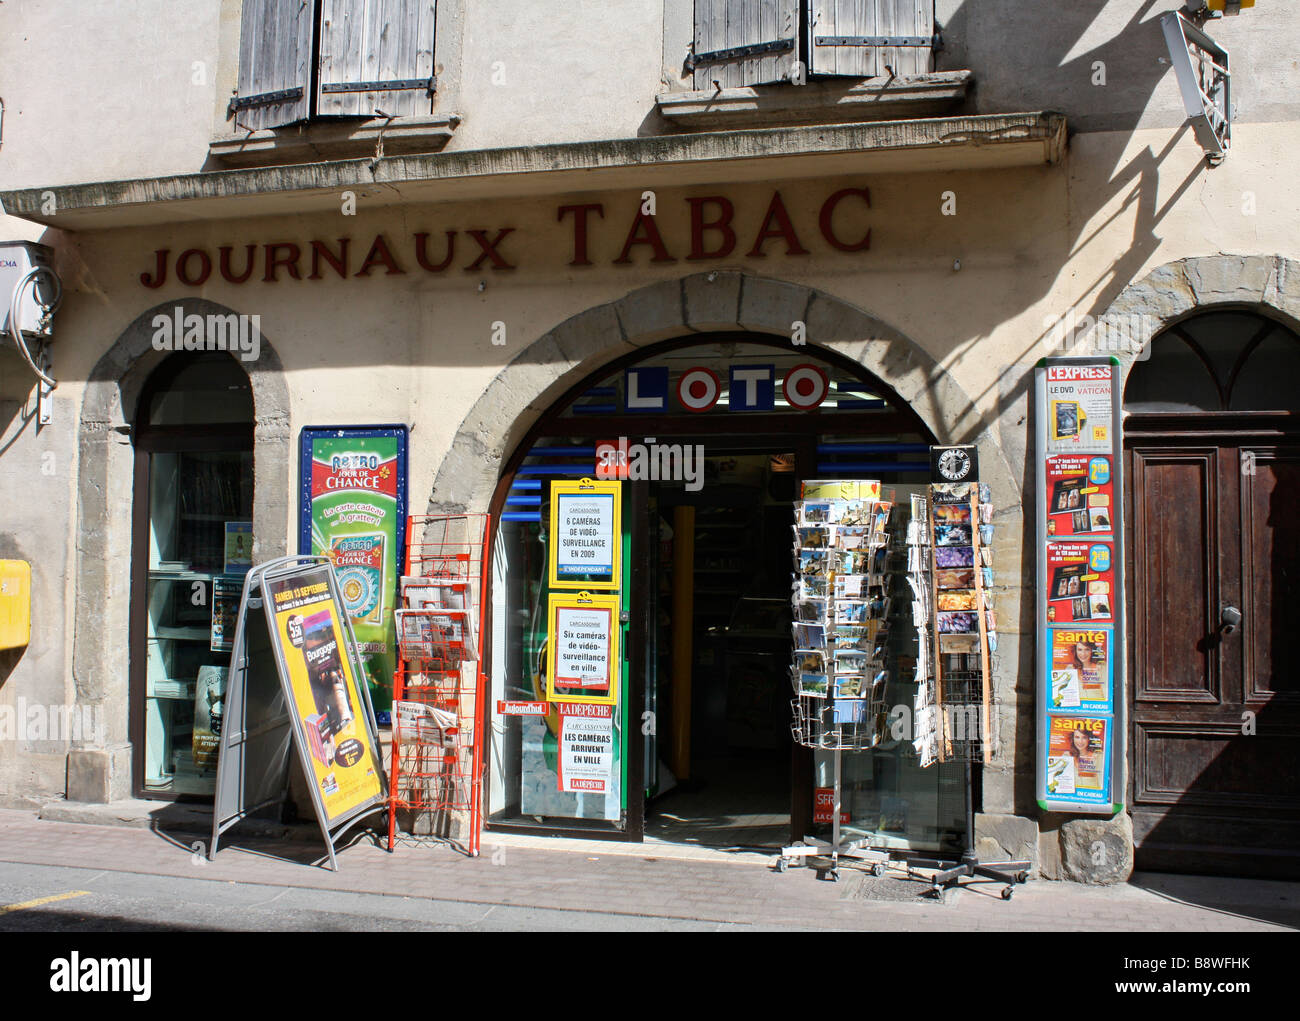 Tabac shop in gargoyle Aude, Carcassonne, Languedoc, France Stock Photo